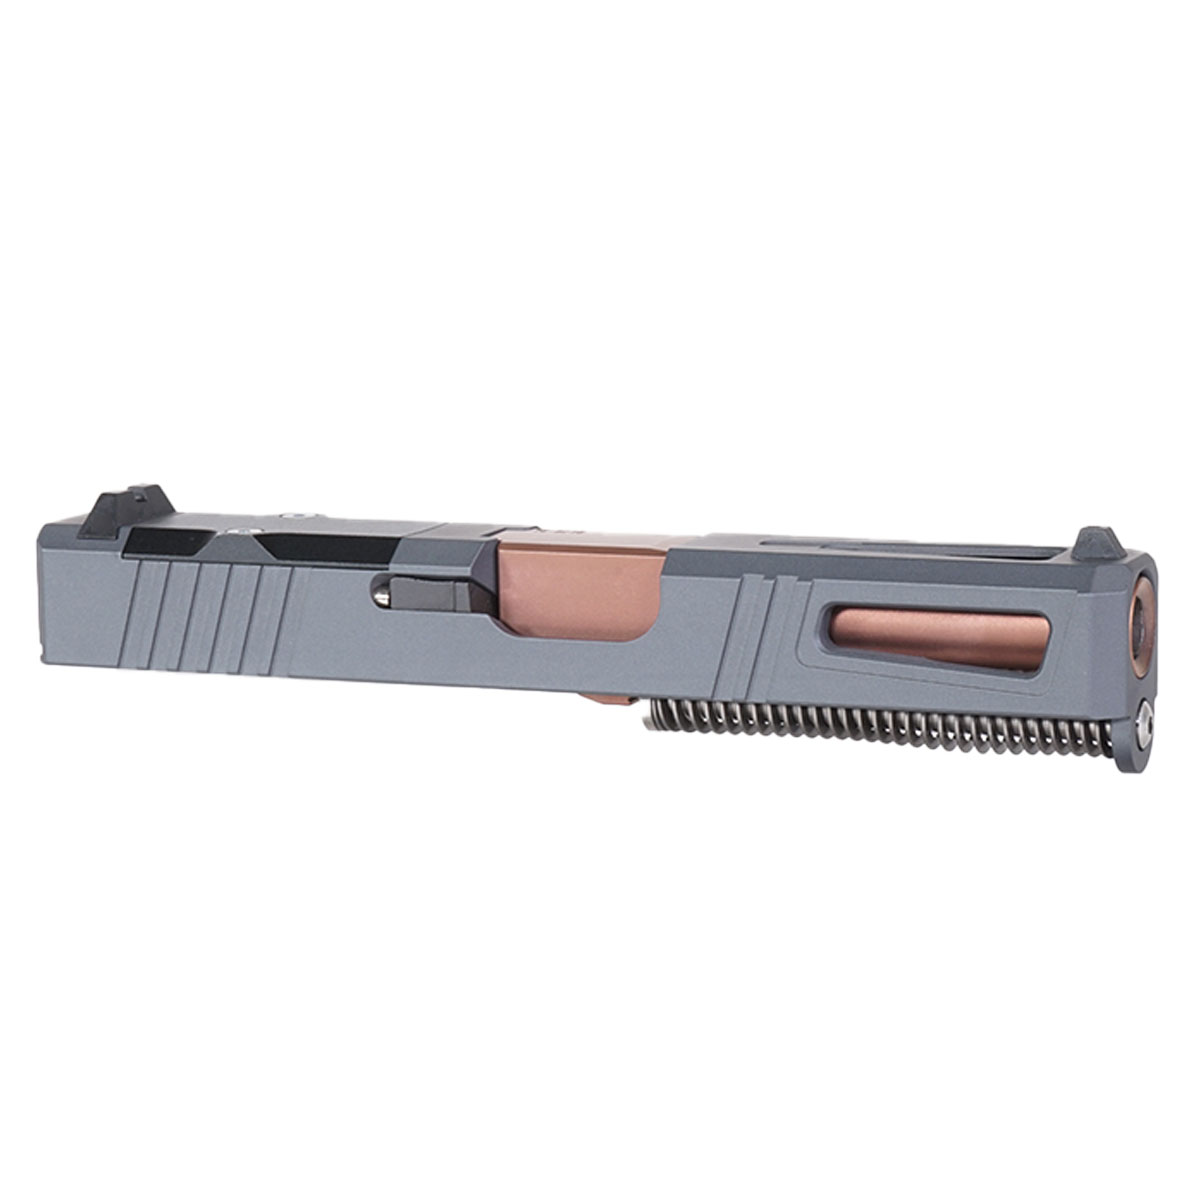 MMC 'Bronzesmith' 9mm Complete Slide Kit - Glock 19 Gen 1-3 Compatible